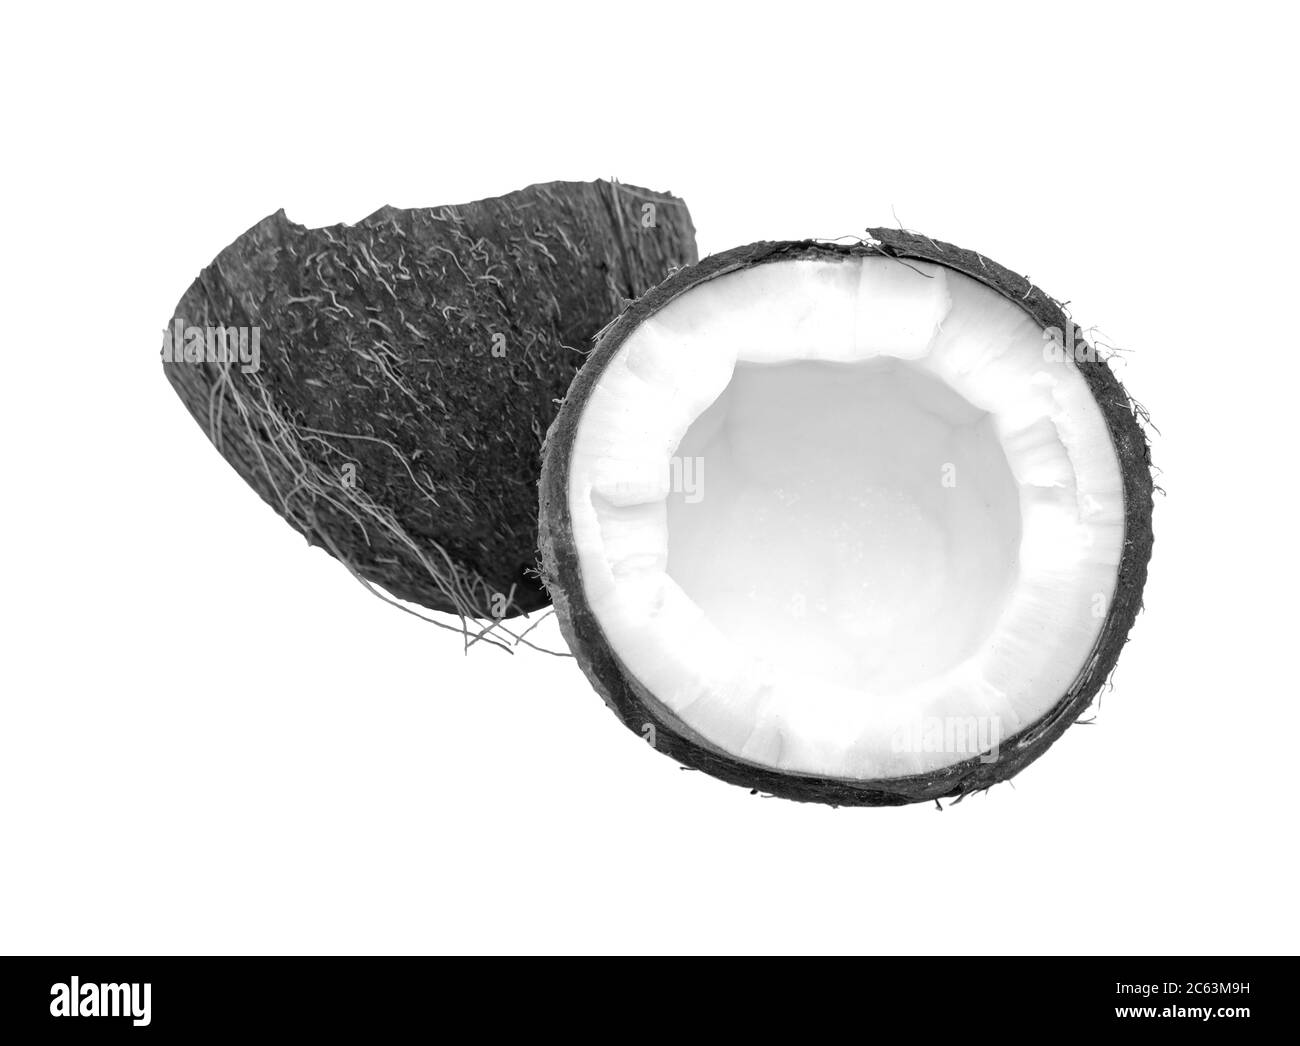 La noix de coco est noire et blanche. Moitié de noix de coco isolée sur fond blanc. Vue de dessus Banque D'Images